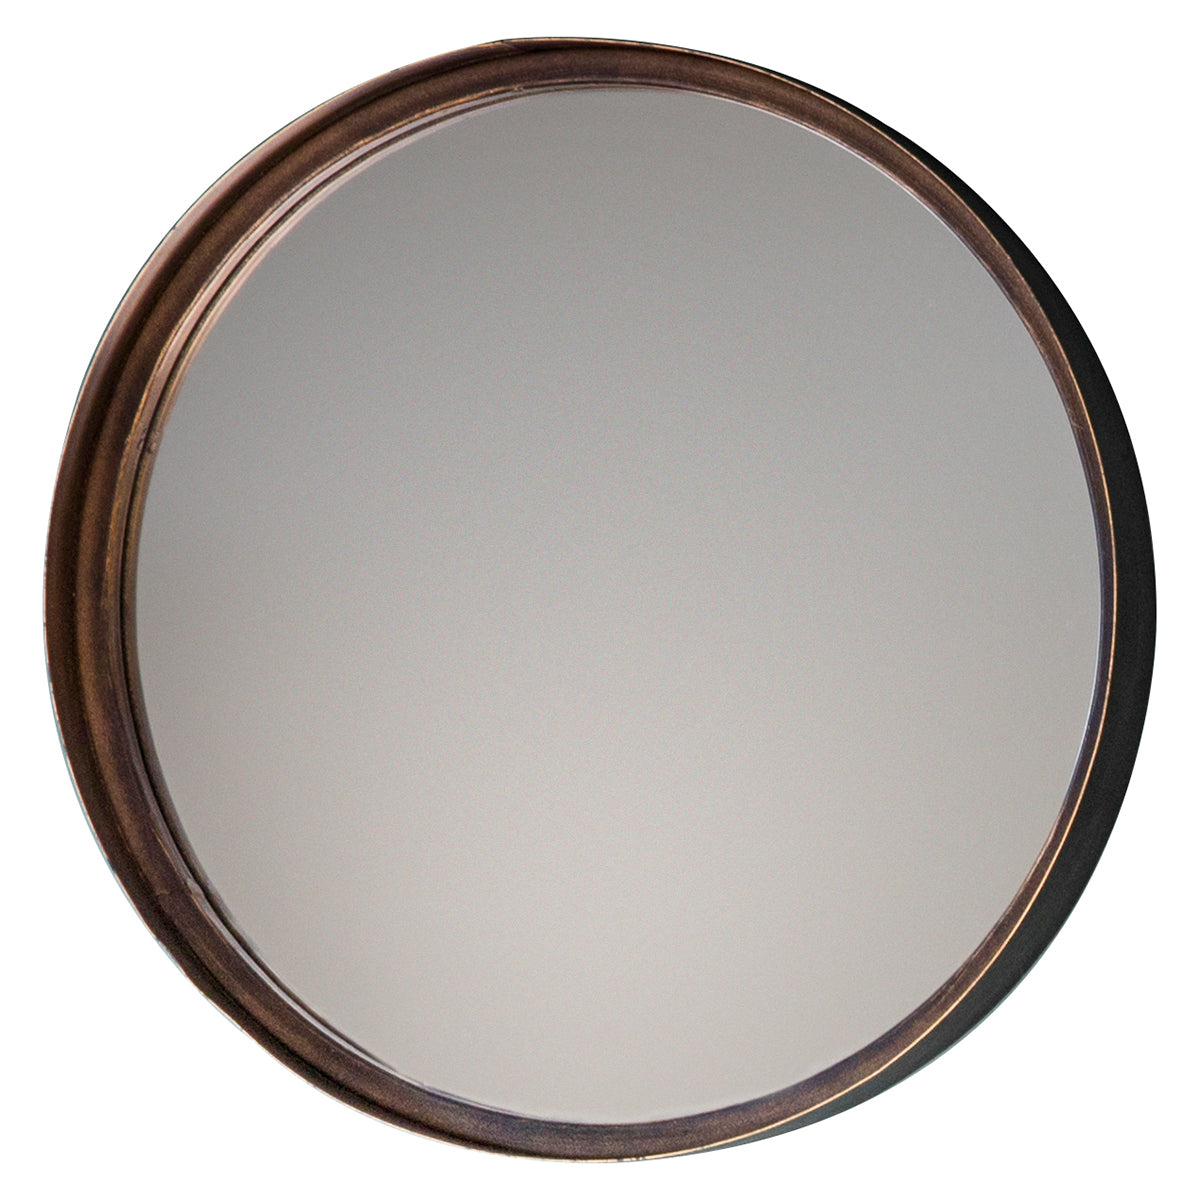 Radley Round Mirror Set of 4